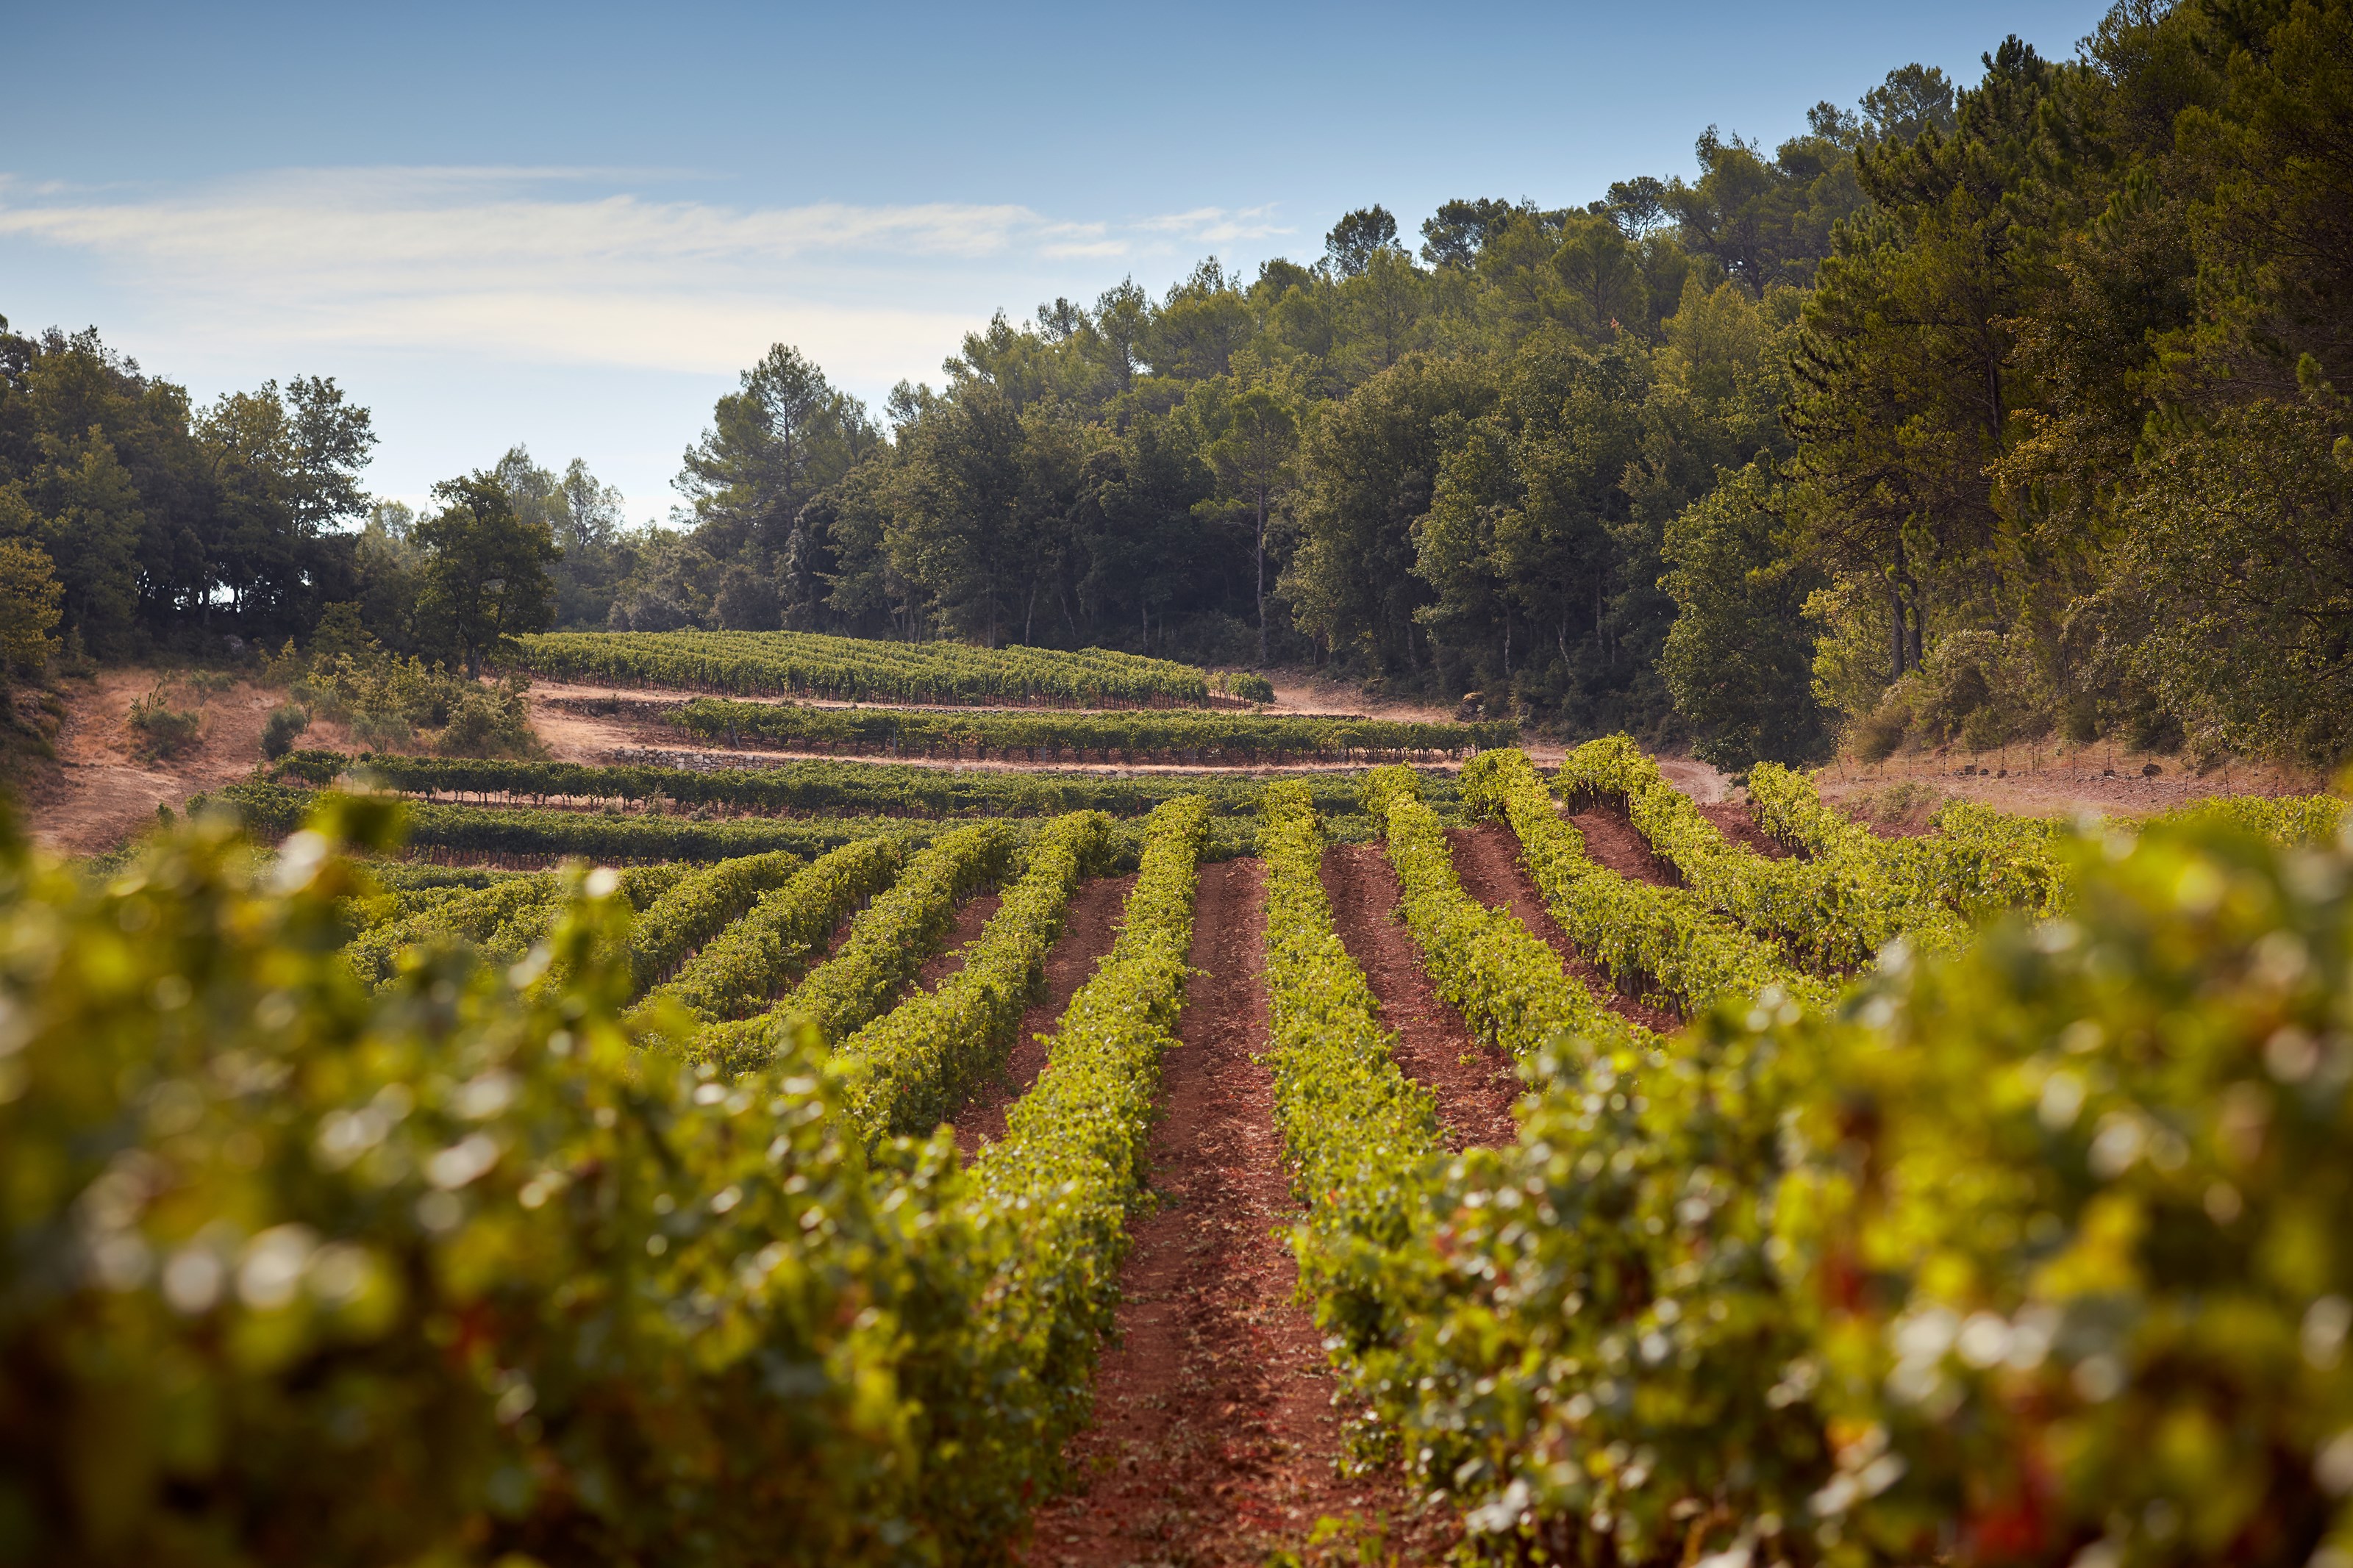 <p>Terroiret hos Ch&acirc;teau Miraval er blant det beste i Provence. Det gj&oslash;res derfor enorme investeringer i form av blant annet grundige geologiske unders&oslash;kelser av jordsmonnet, noe som har avdekket en rekke parseller som er perfekte for kultivering av vindruer. En stor andel nyplantinger gj&oslash;res som vil b&aelig;re frukter til enda bedre vin i fremtiden.&nbsp;</p>
<p>Miraval Ros&eacute; kommer blant annet fra slottets beste parseller Muriers, Longue og Romarin, som er noen av de beste terroirene i Provence. Vinmarkene best&aring;r av leire og kalkstein, og befinner seg p&aring; til dels eldgamle terrasser ved 350 meter over havet. Dette er et kj&oslash;lig mikroklima med stor temperaturvariasjon mellom natt og dag, noe som fremmer aromakompleksitet i druene.</p>